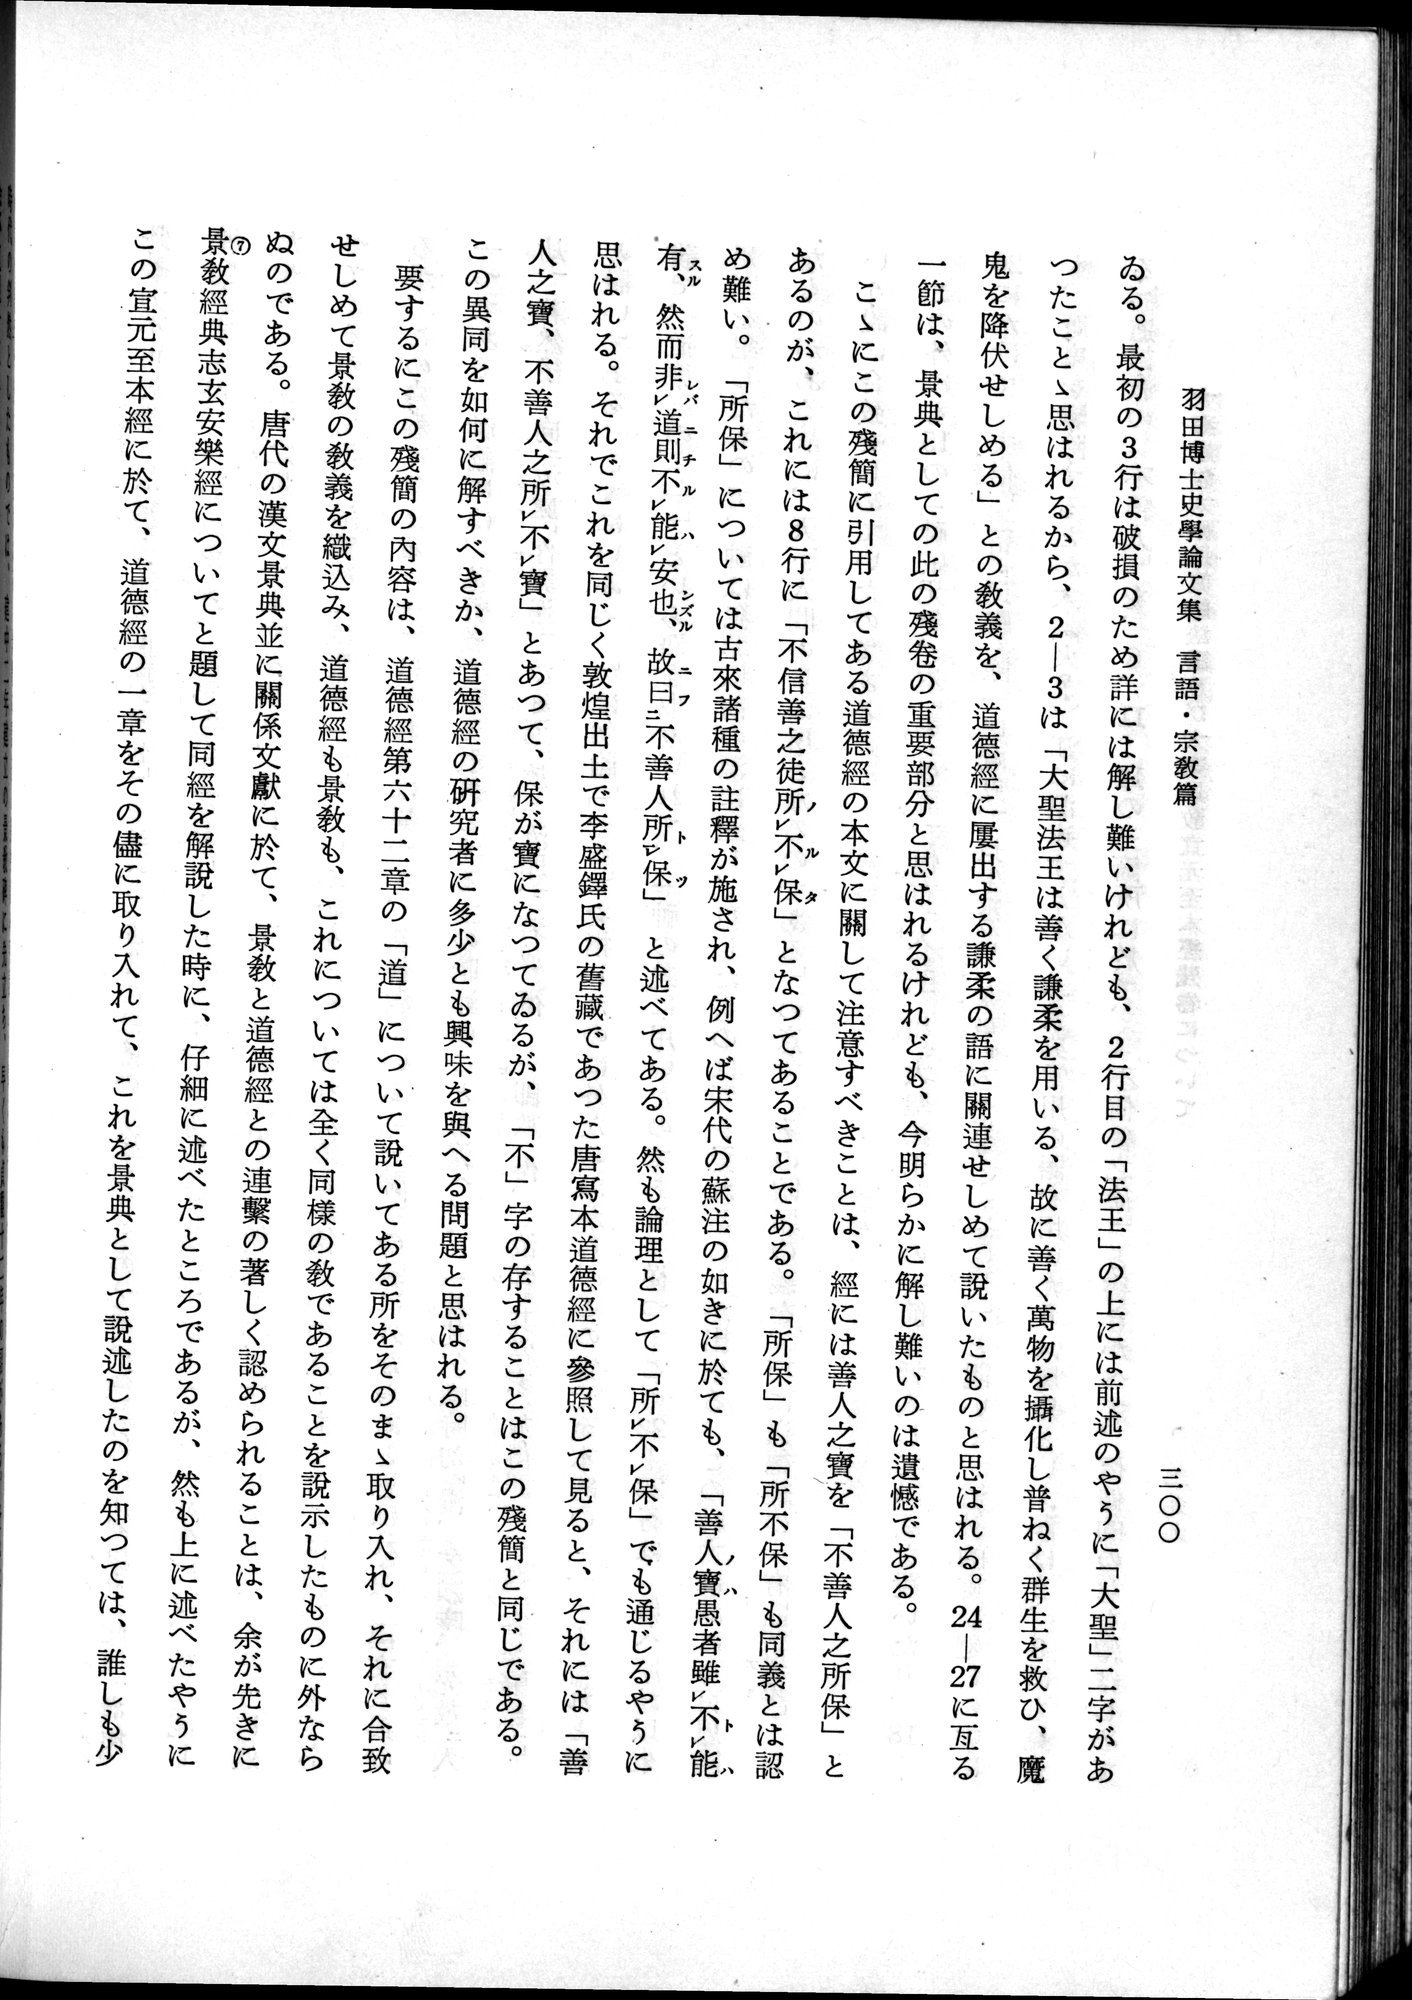 羽田博士史学論文集 : vol.2 / 362 ページ（白黒高解像度画像）